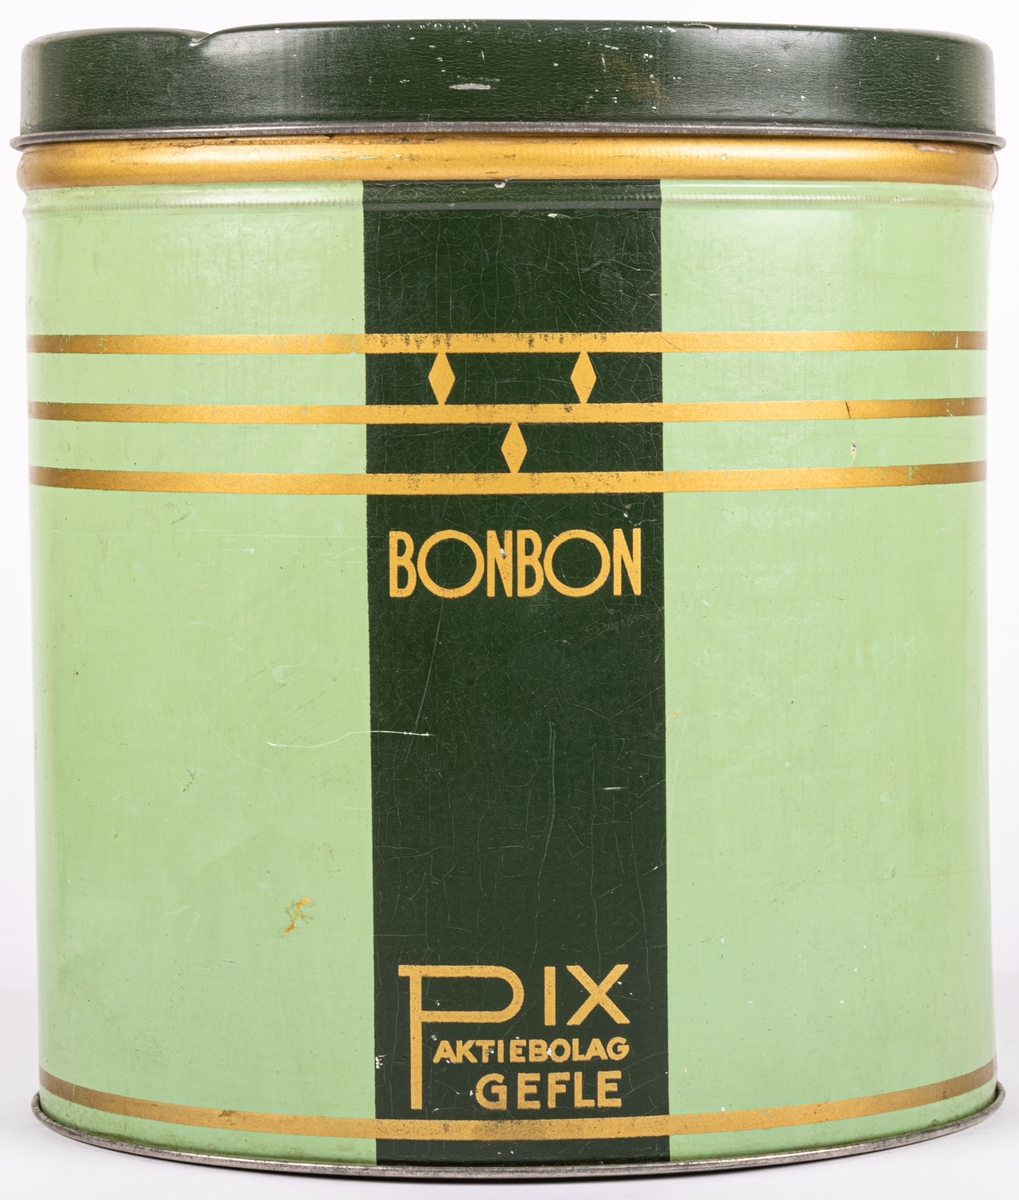 Plåtburk för bonbon-karameller. Två nyanser av grönt med gulddekor. Sannolikt från 1930-talet. Stildrag av art deco och funkis.